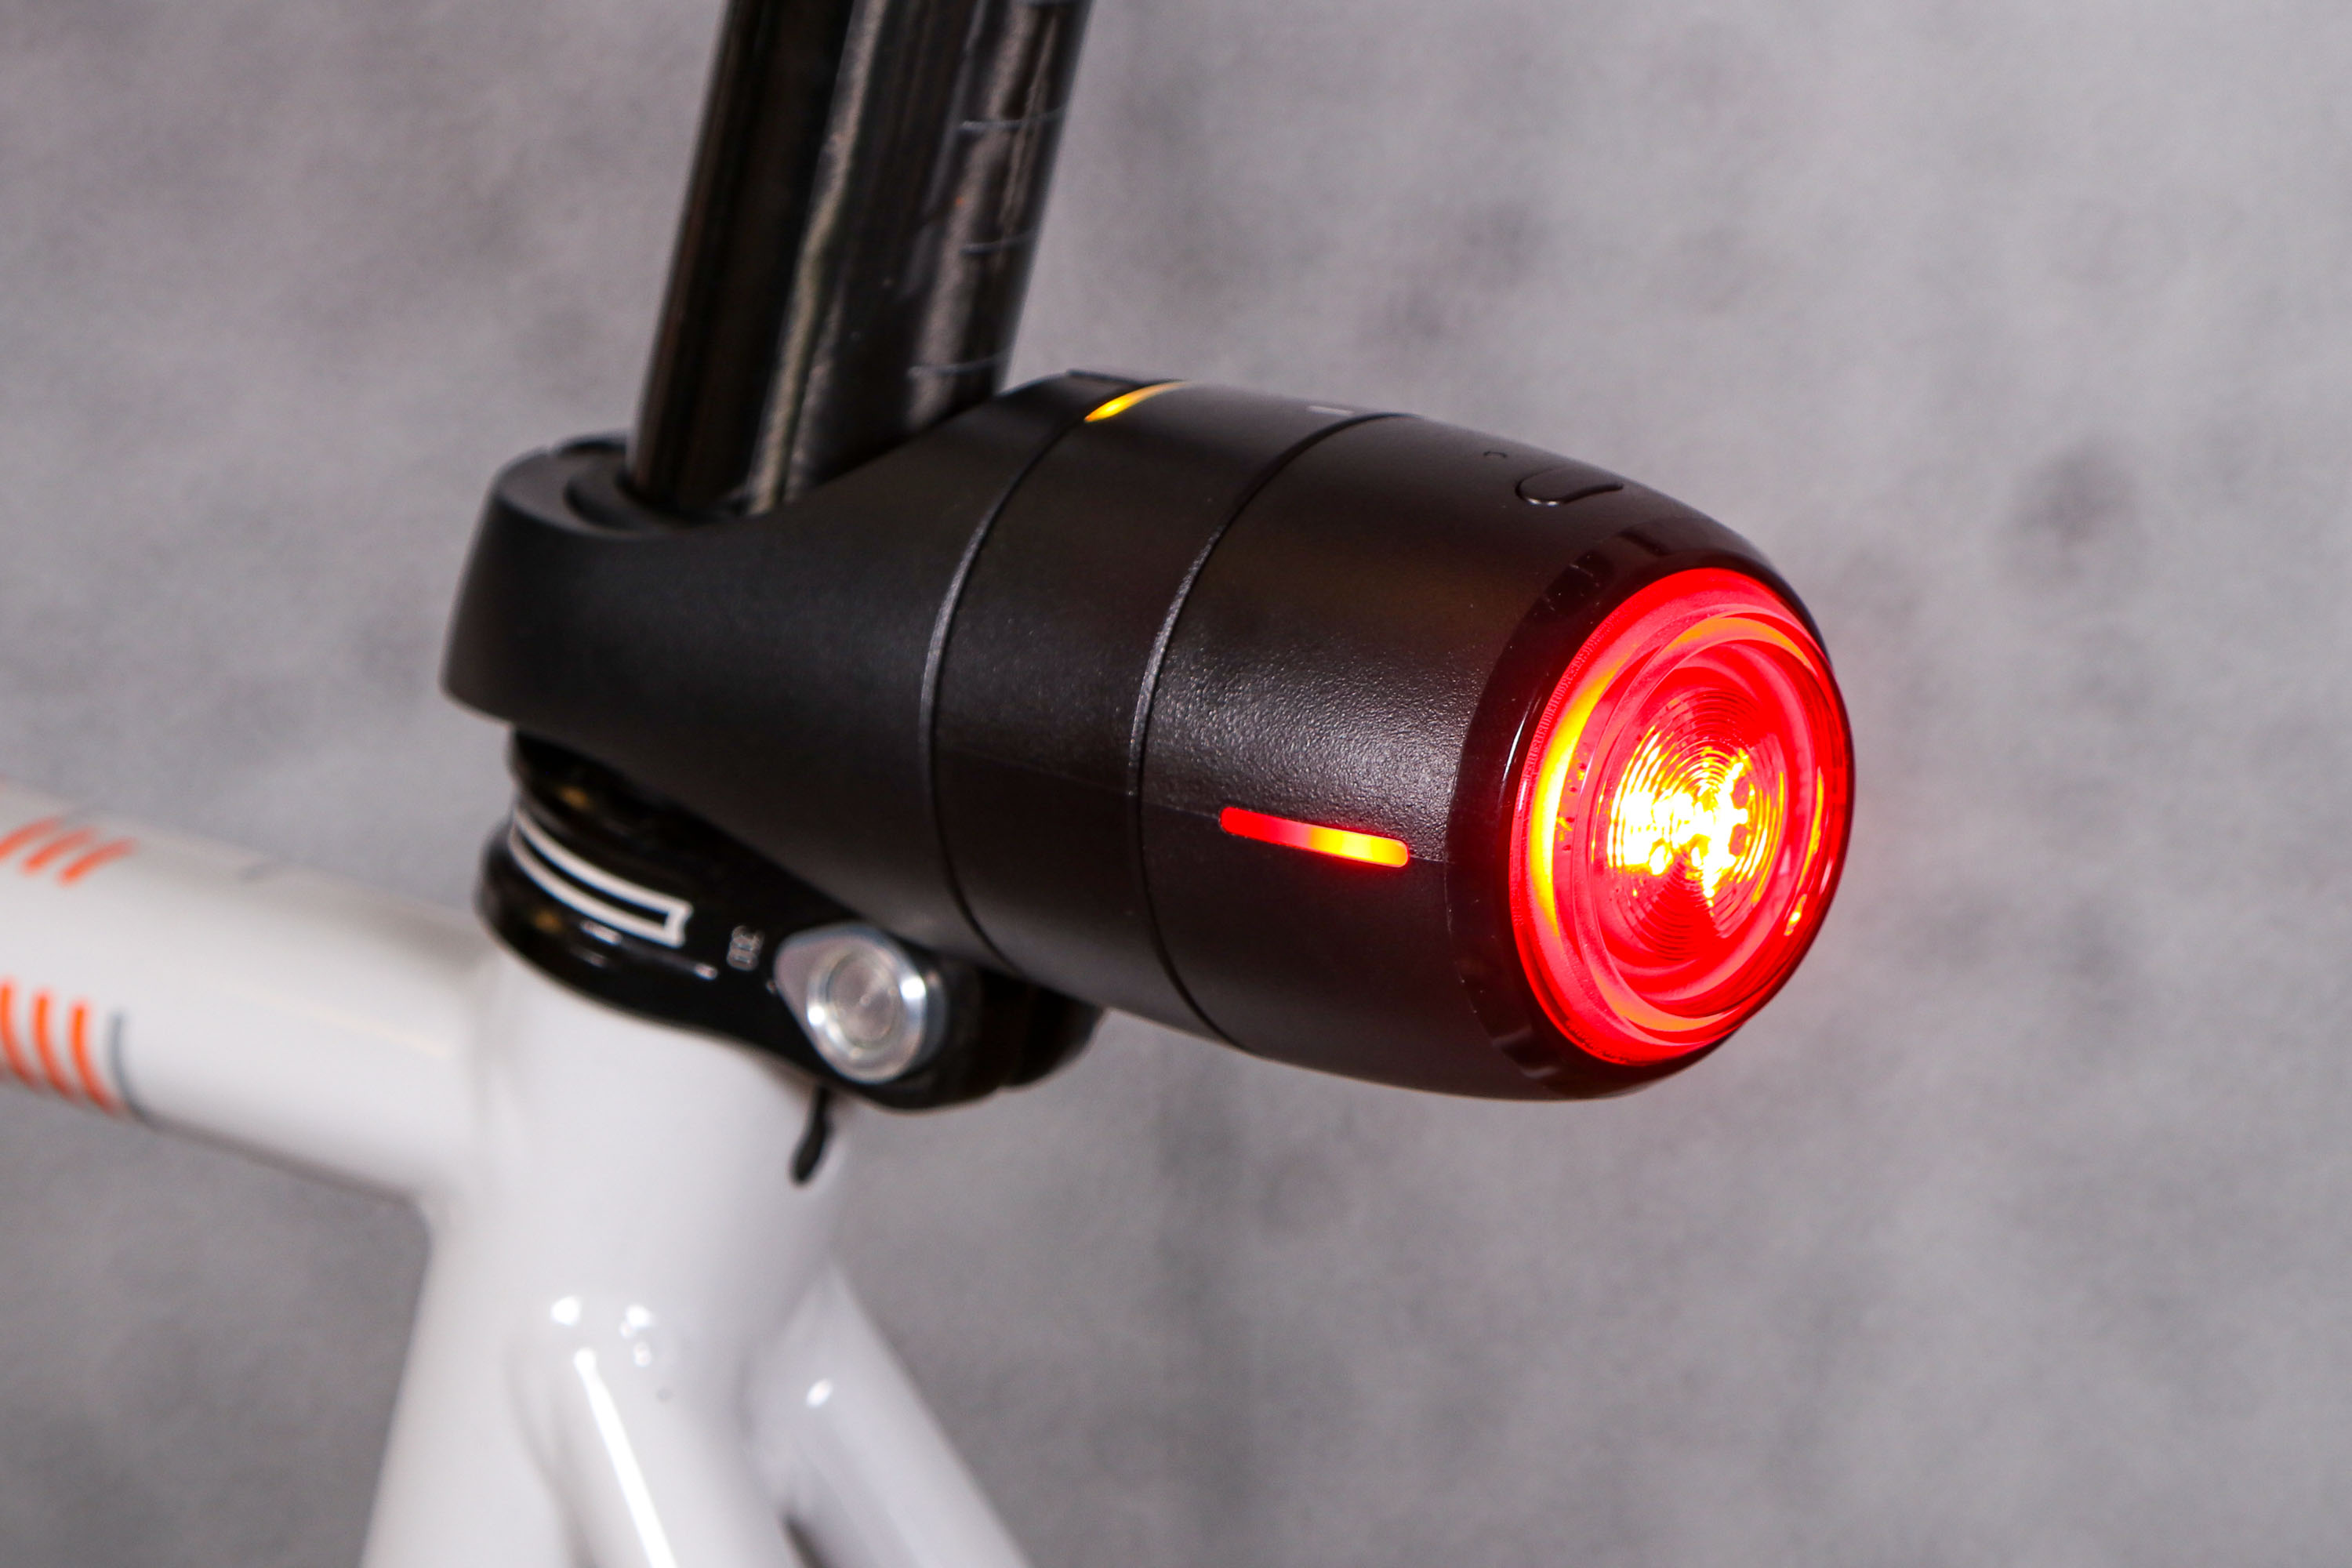 Modstander Kiks vogn Review: Vodafone Curve bike light & GPS tracker | road.cc